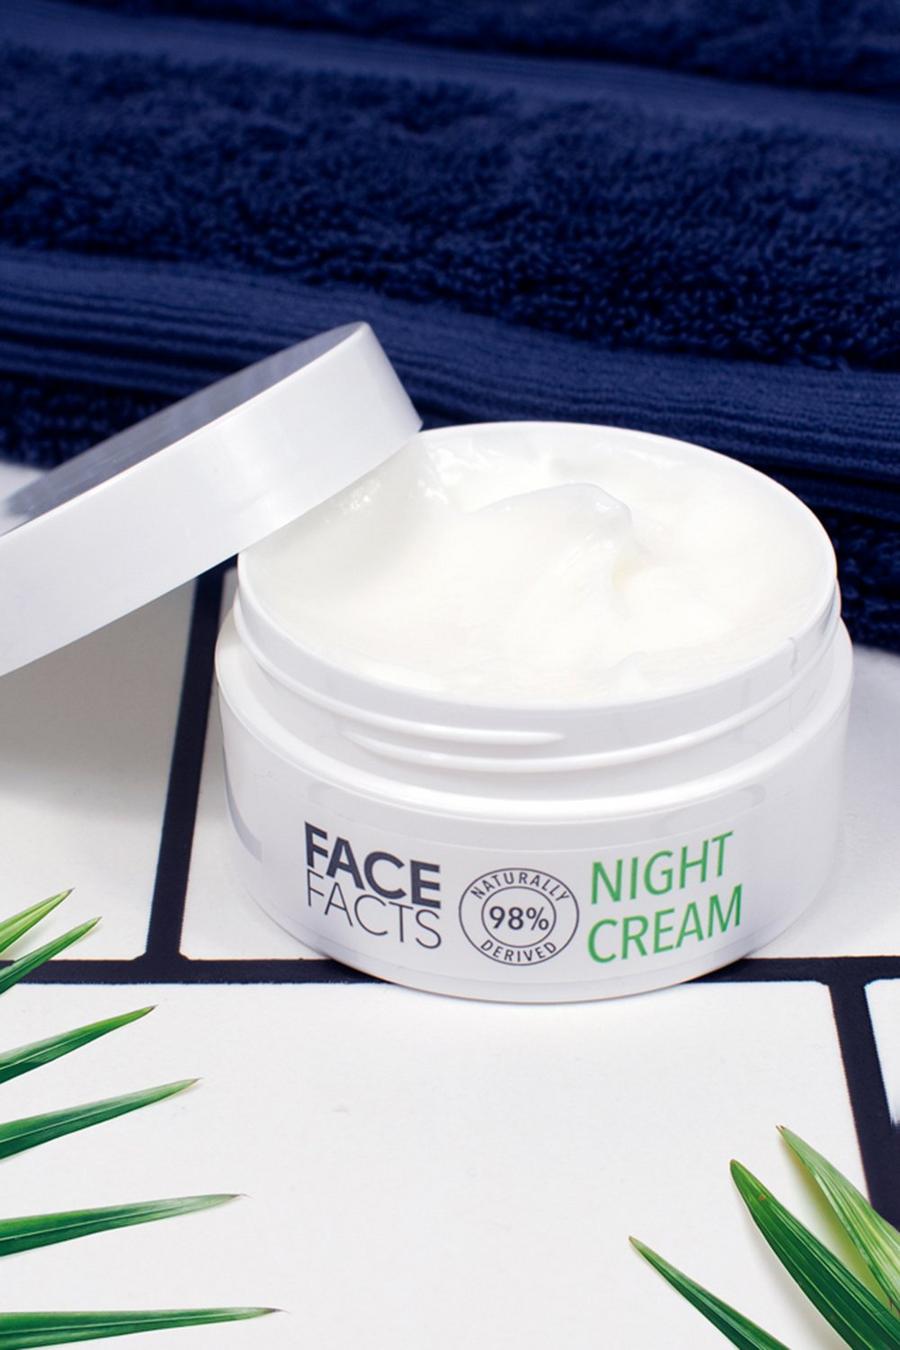 Face Facts - Crème de nuit, Green image number 1